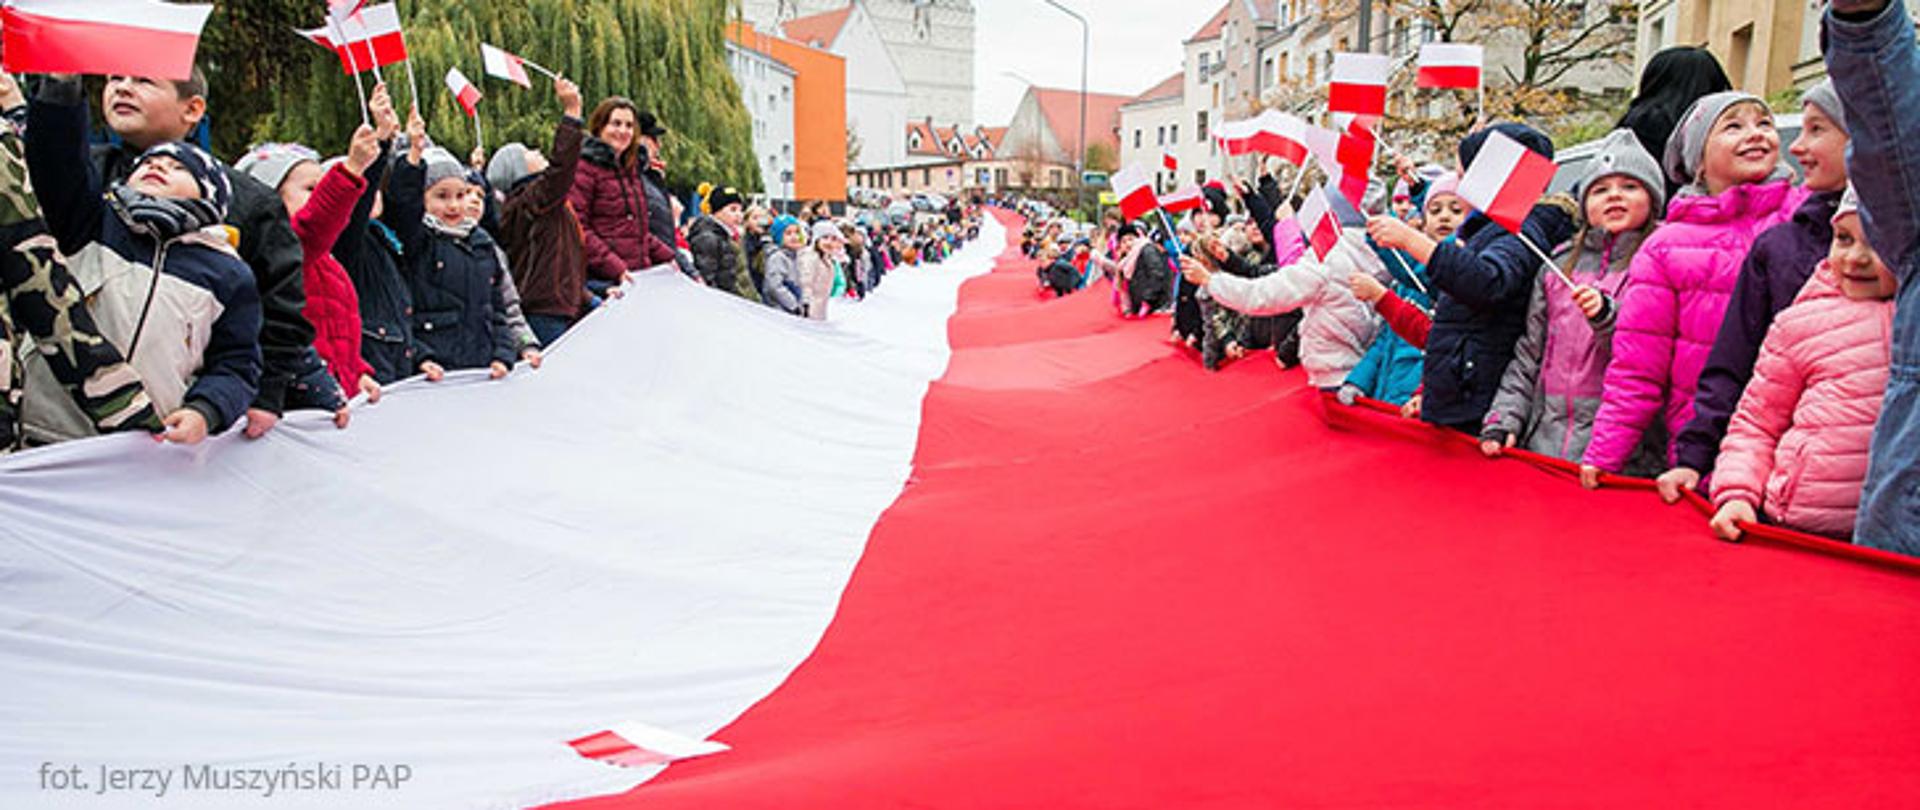 Dan poljske zastave